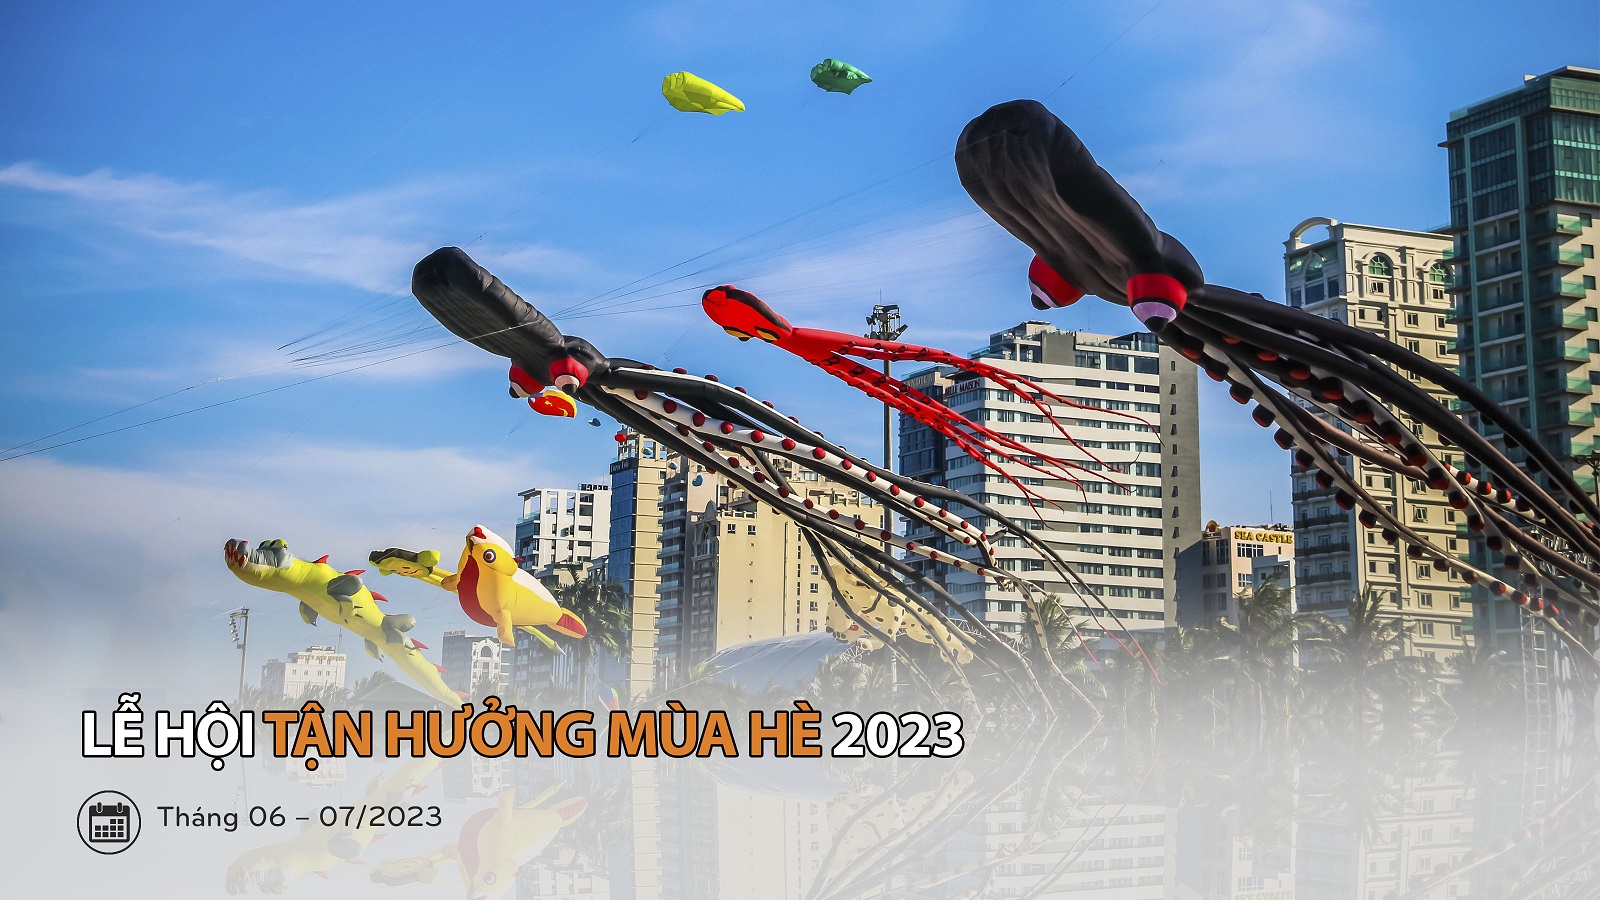 Le Hoi Tan Huong Mua He Danang 2023 Danangfantasticity